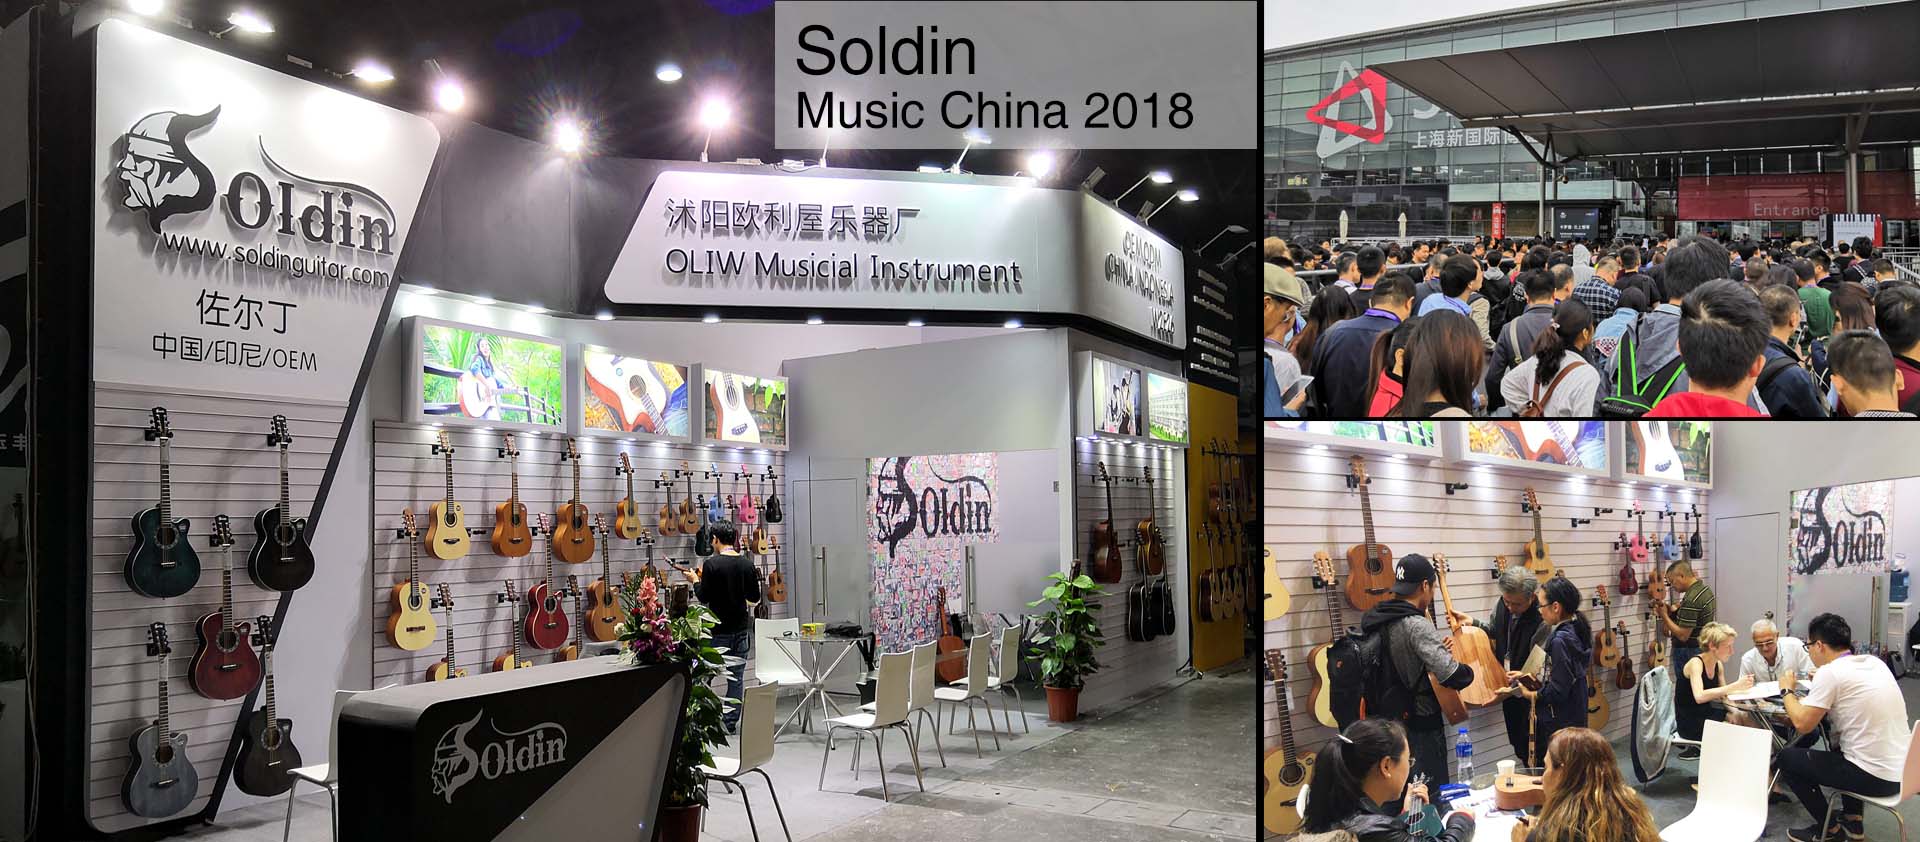 Soldin 2018 Music China